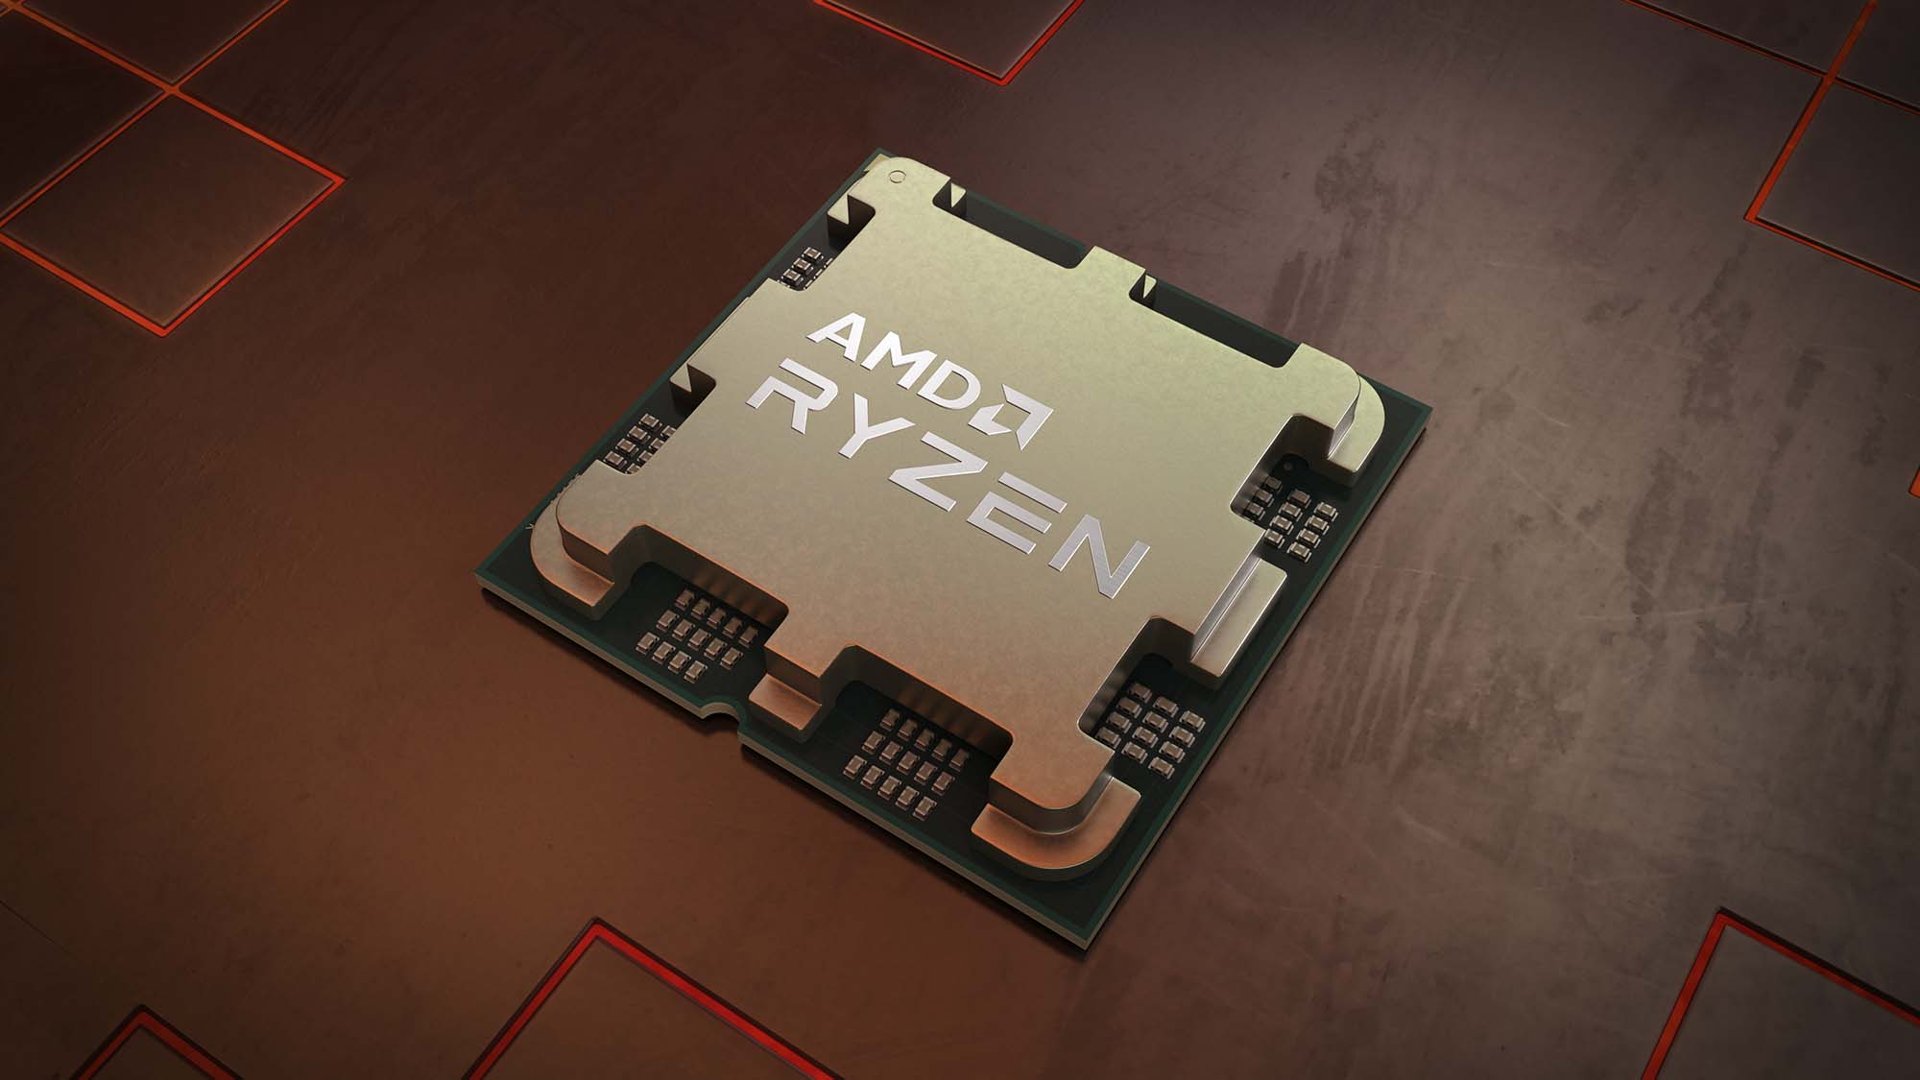 Procesor AMD Zen 4 na metalowej powierzchni